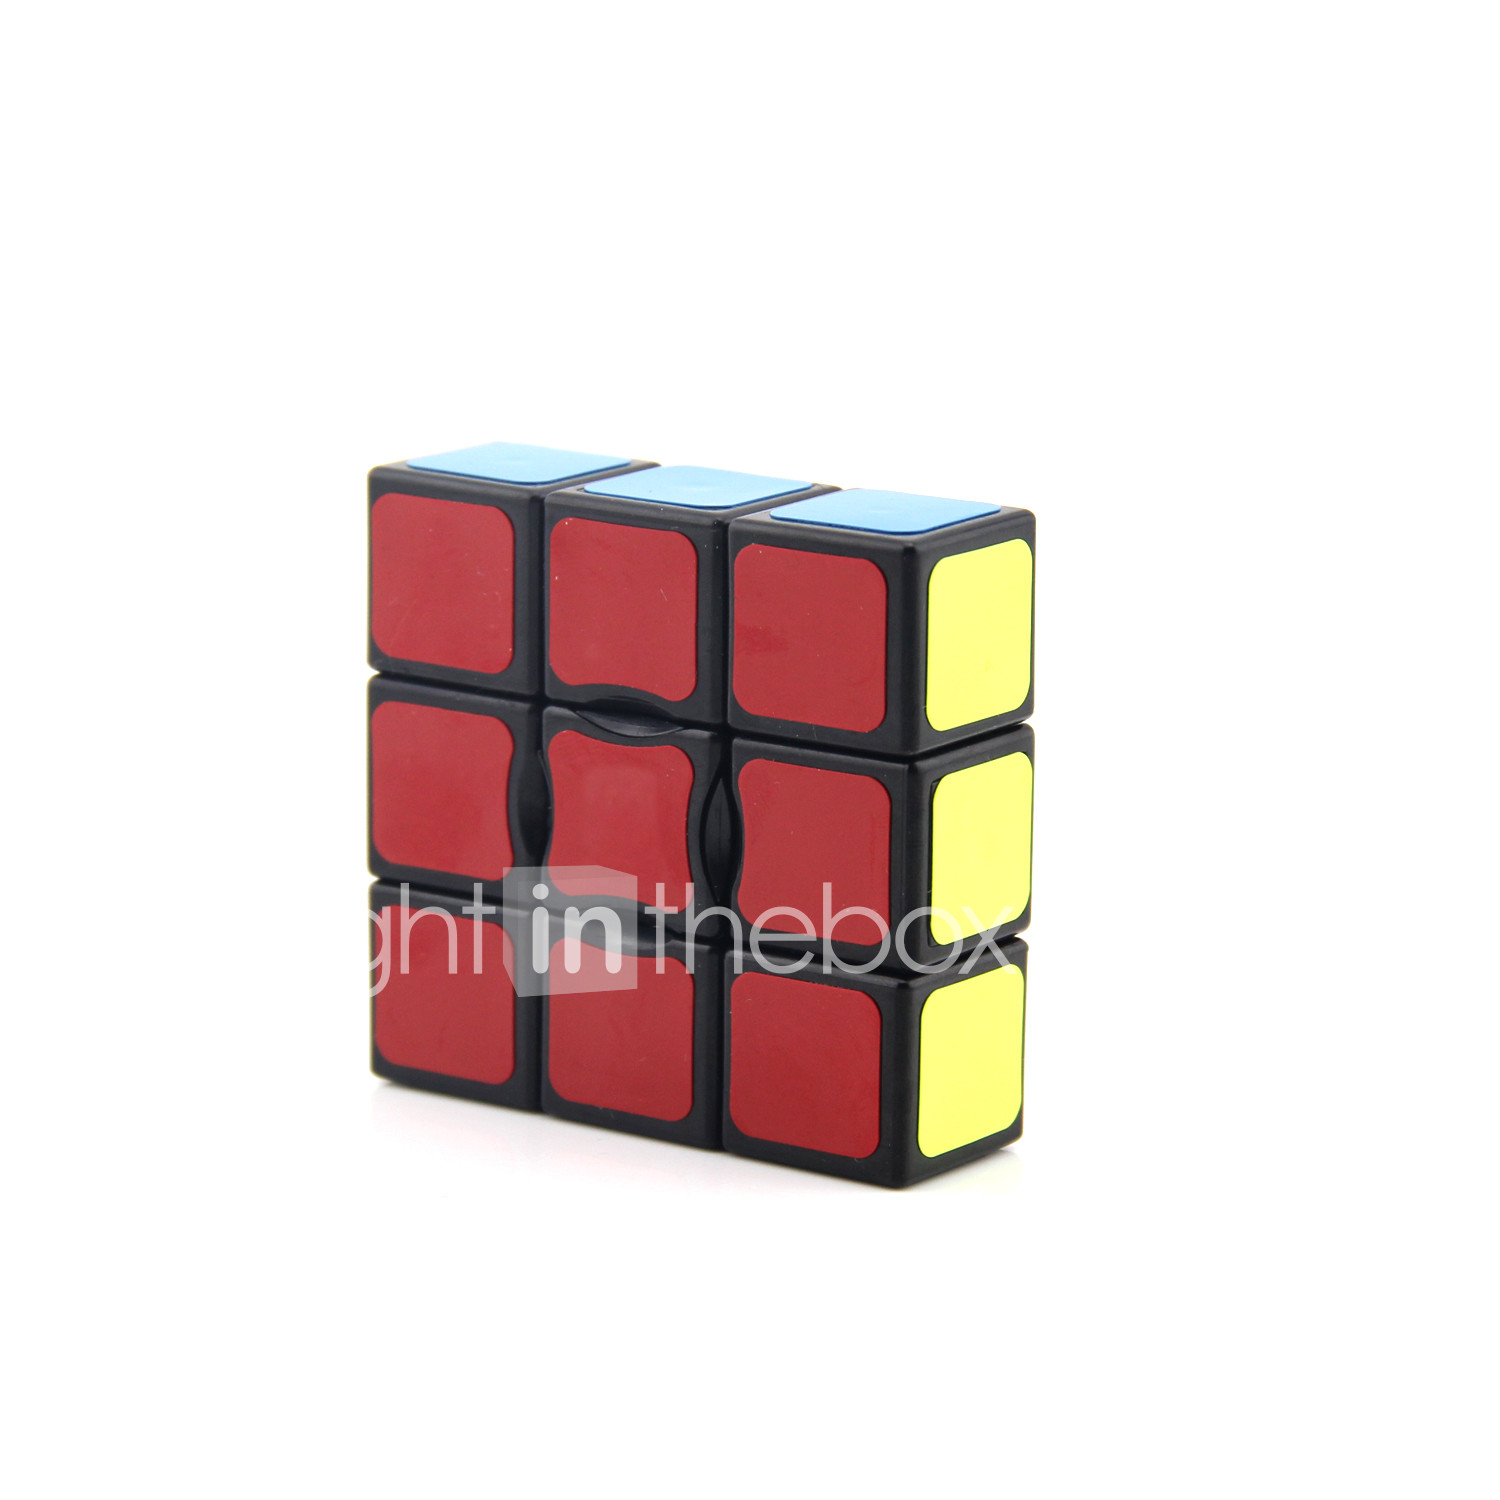 Magic Cube Iq Cube Yongjun D912 Scramble Cube Floppy Cube 1 3 3